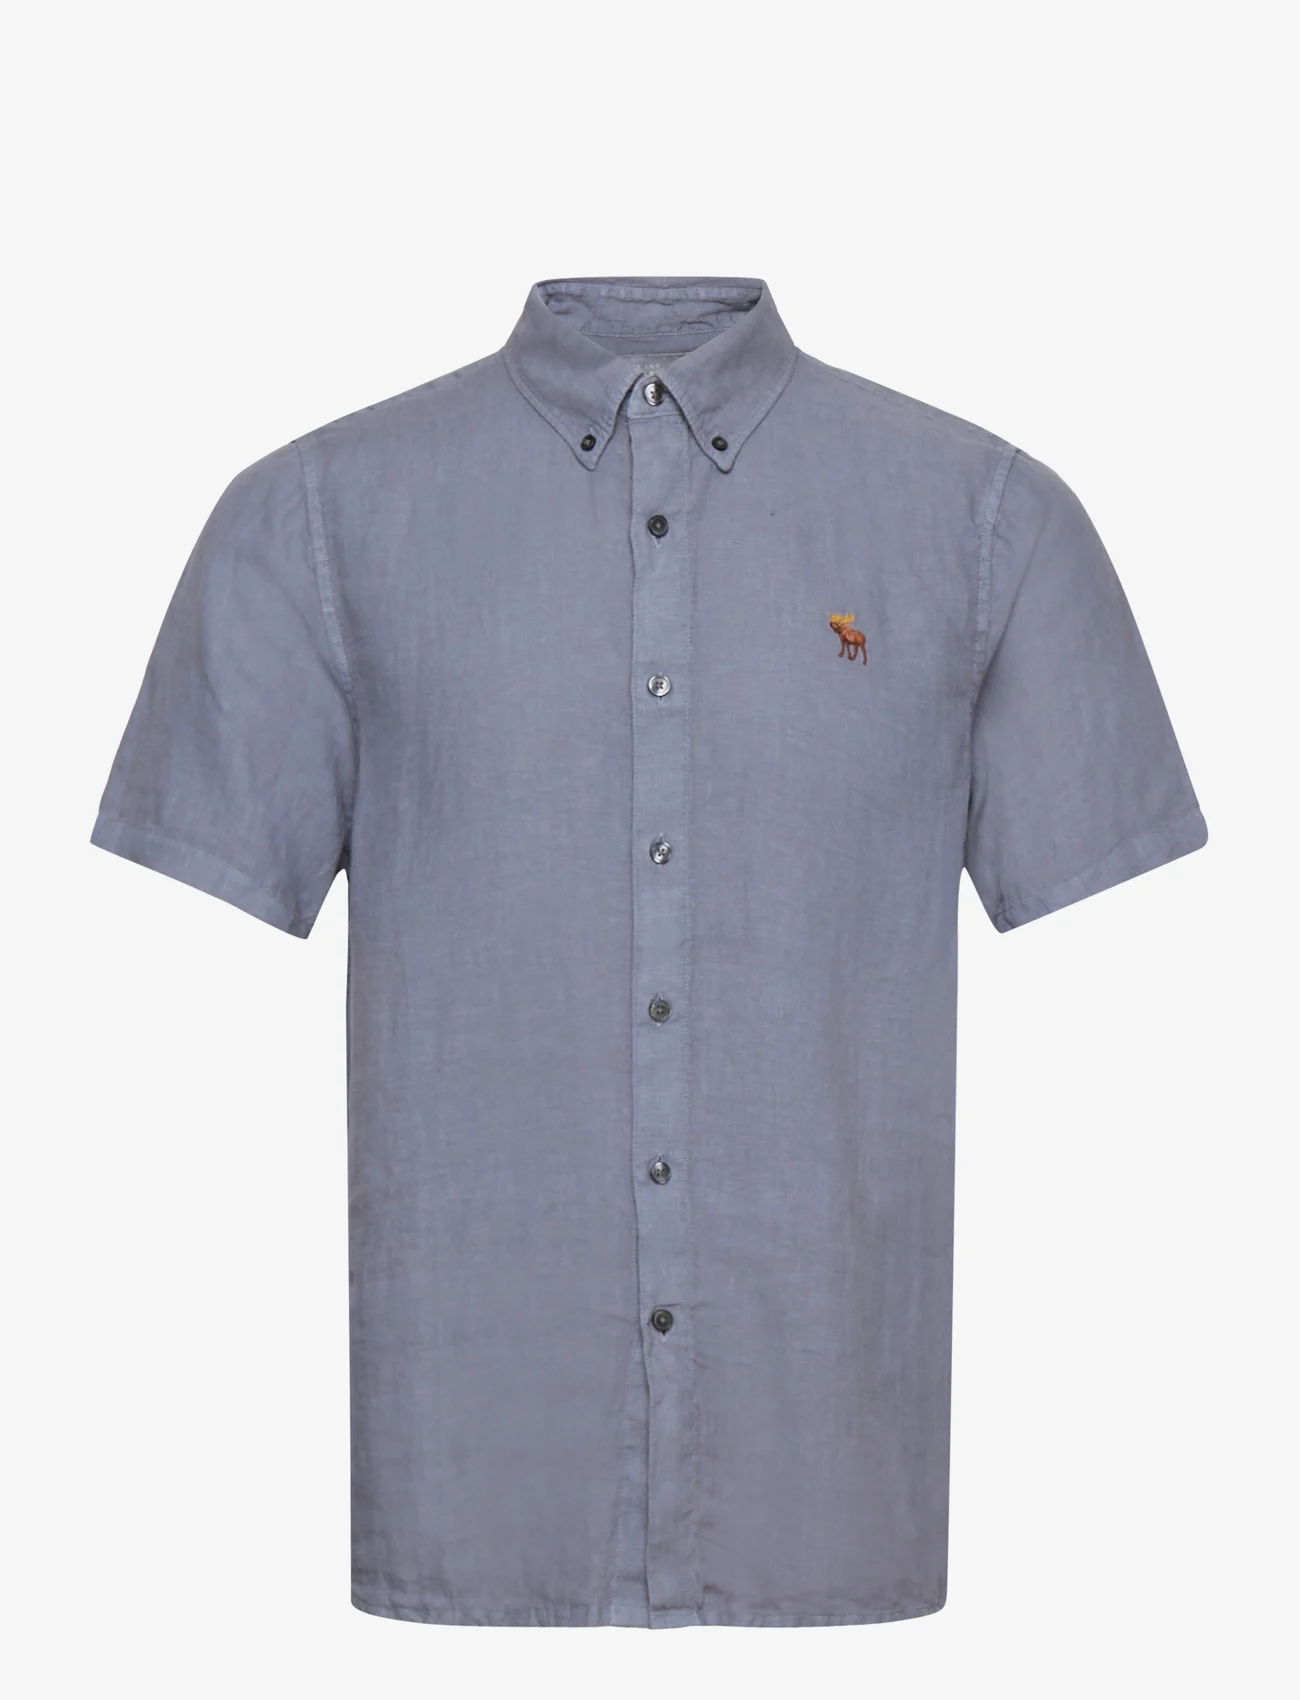 Abercrombie & Fitch - ANF MENS WOVENS - lininiai marškiniai - blue solid - 0